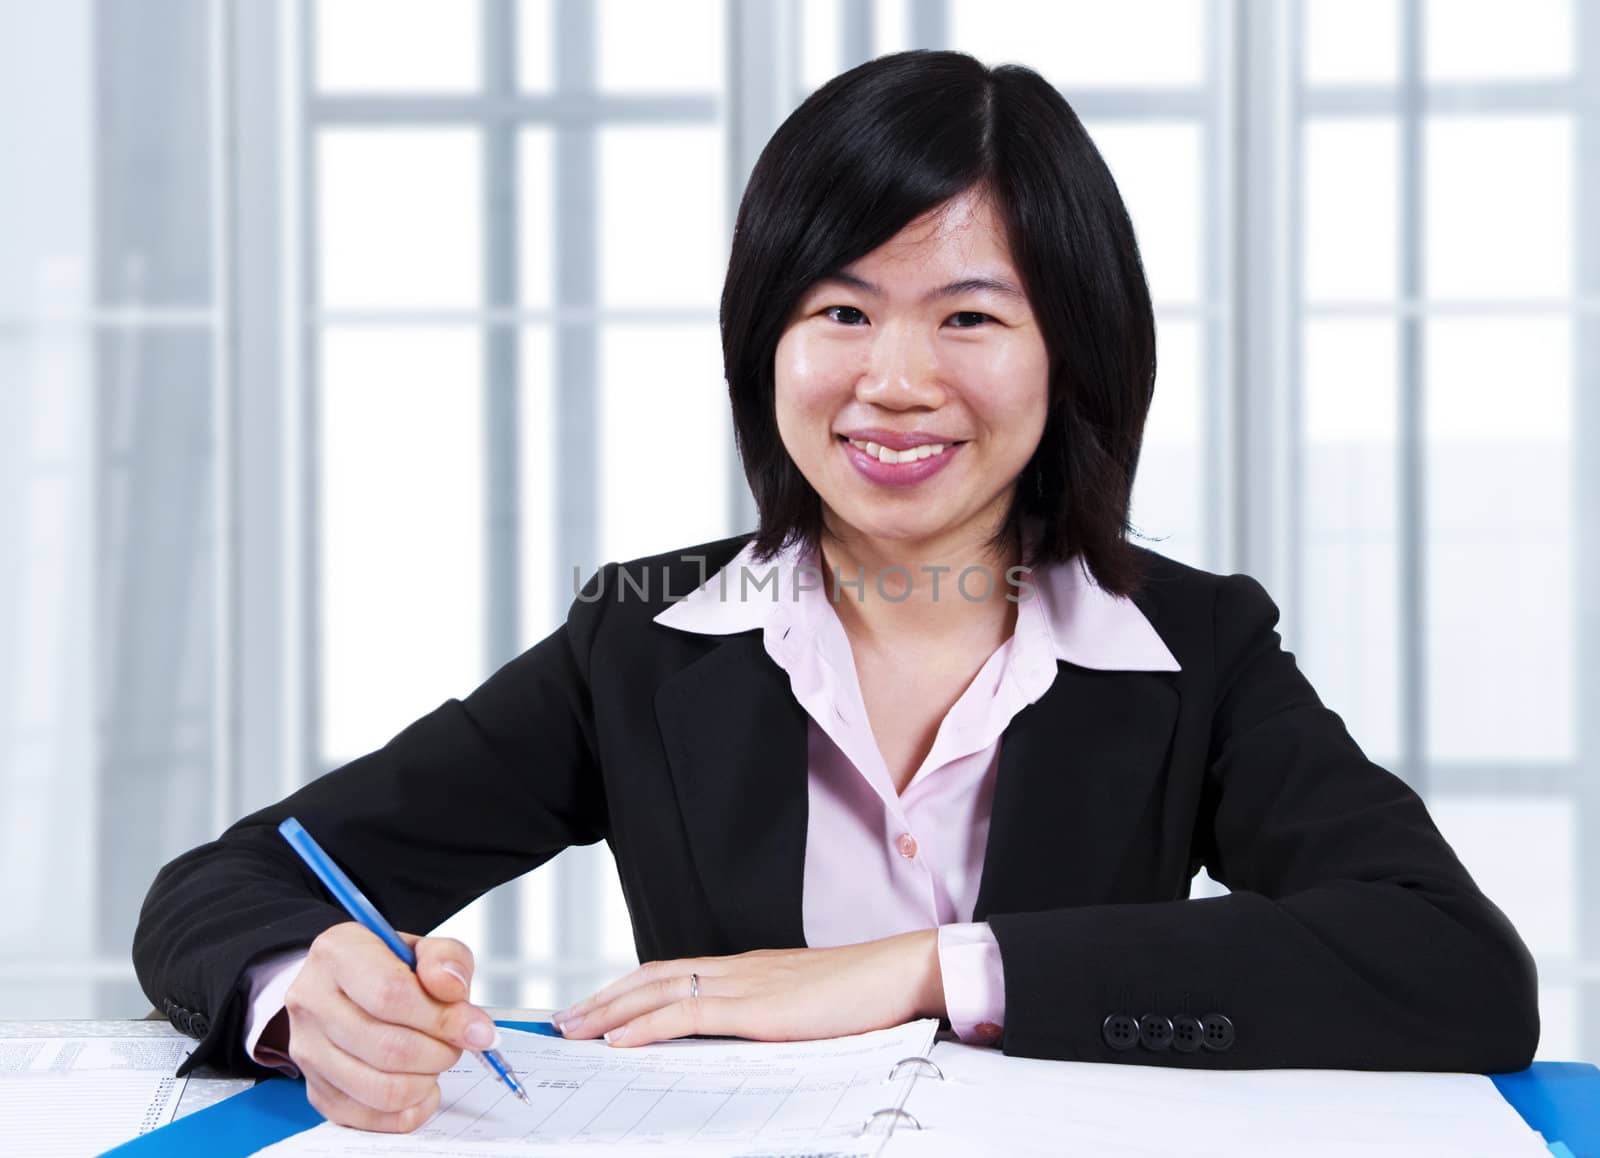 Asian woman working in office by szefei